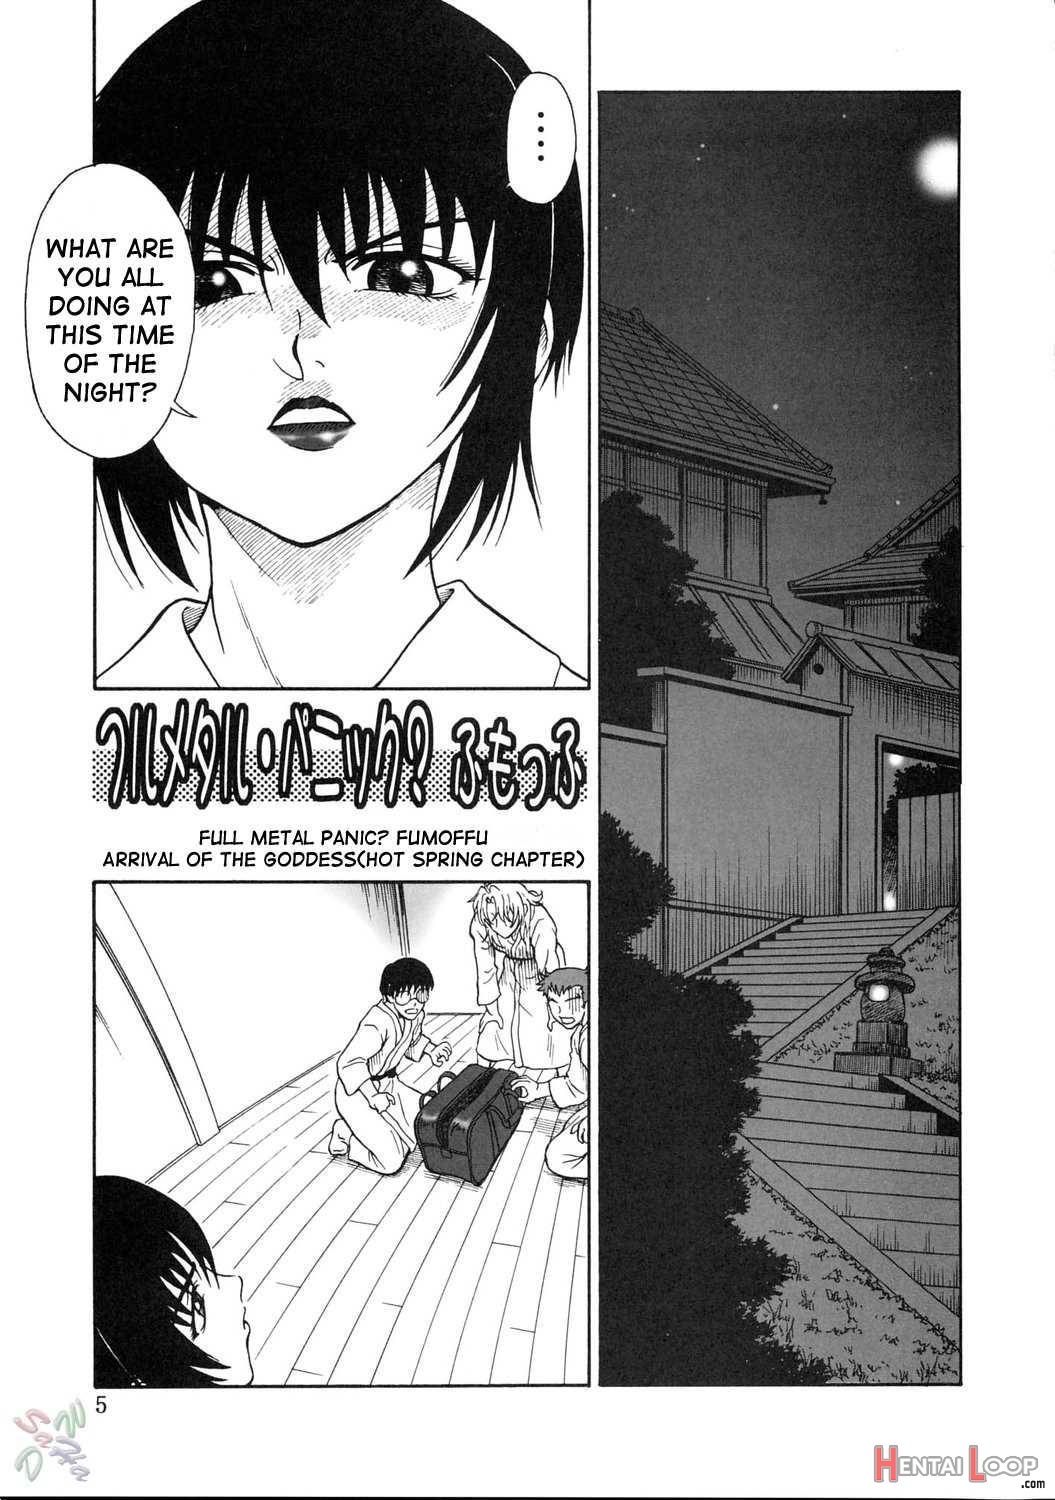 Gyokusai Kakugo 5 page 3